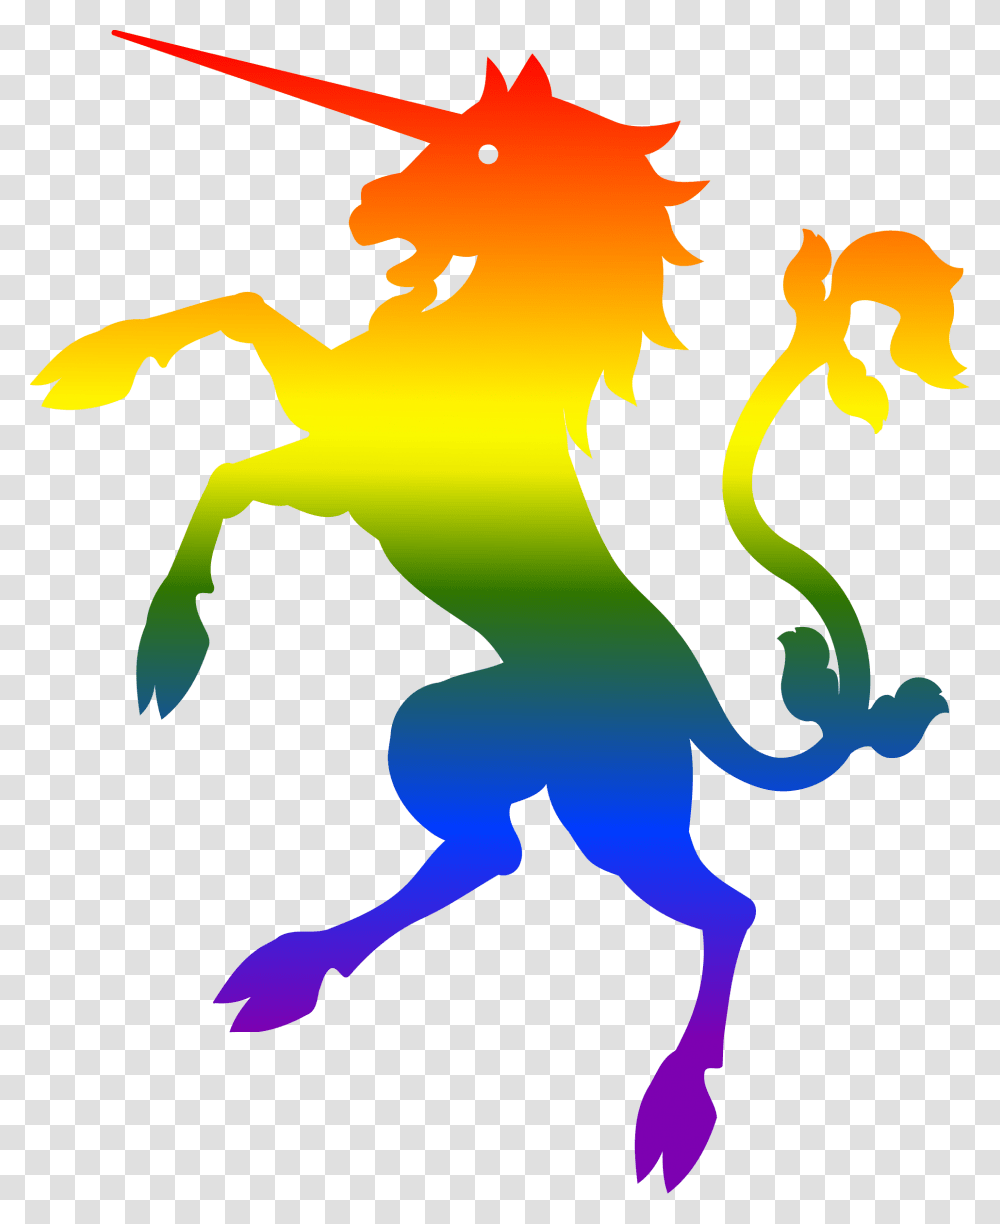 Rainbow Flag Unicorn Mythology Rainbow Flag With Unicorn, Dragon, Outdoors, Light Transparent Png